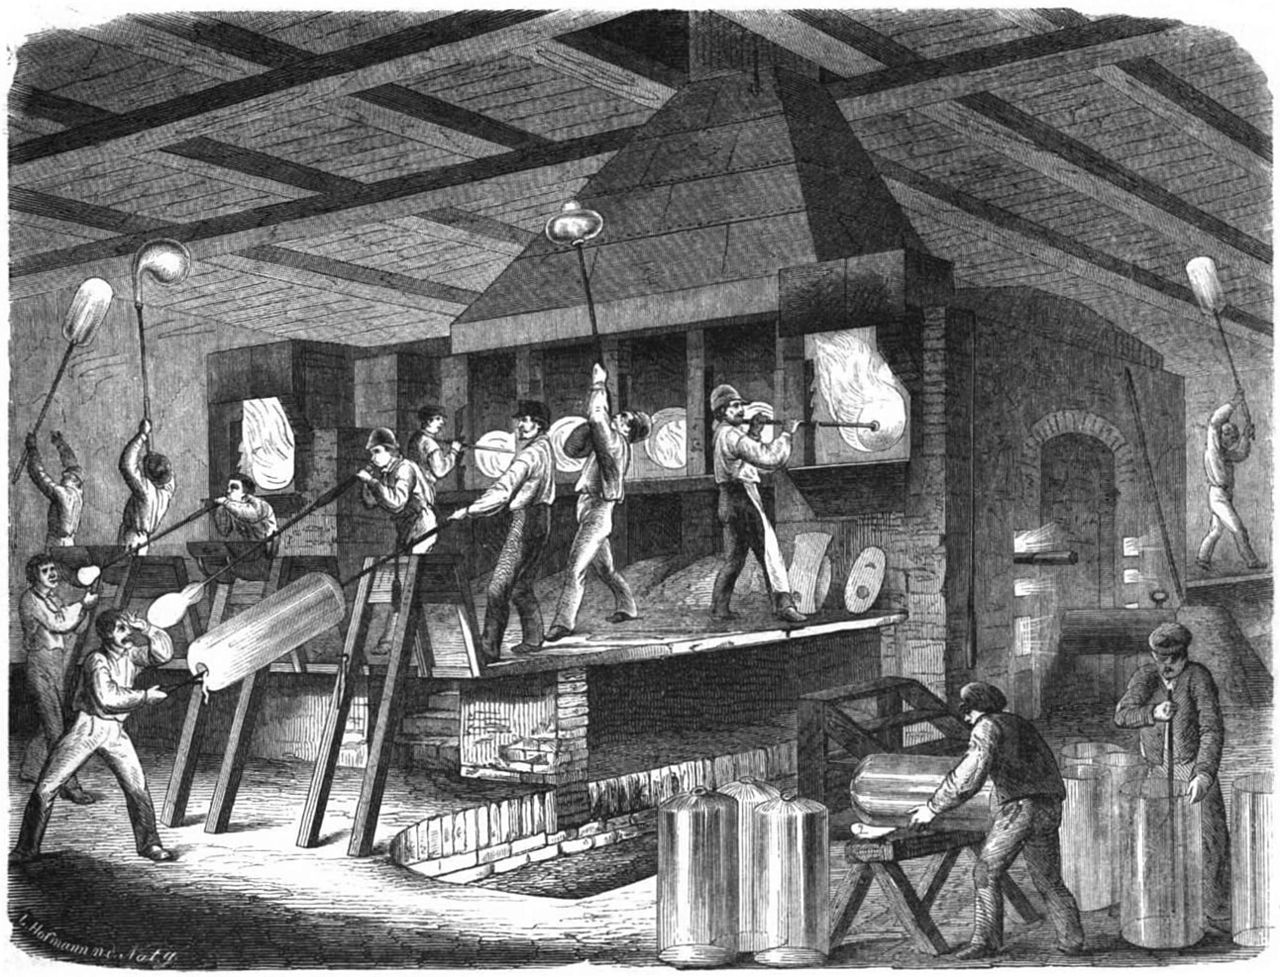 Pintura em preto e branco da fábrica de vidro de Fikentscher mostrando diversos homens trabalhando na frente de fornos e manuseando a mistura que resulta no vidro.